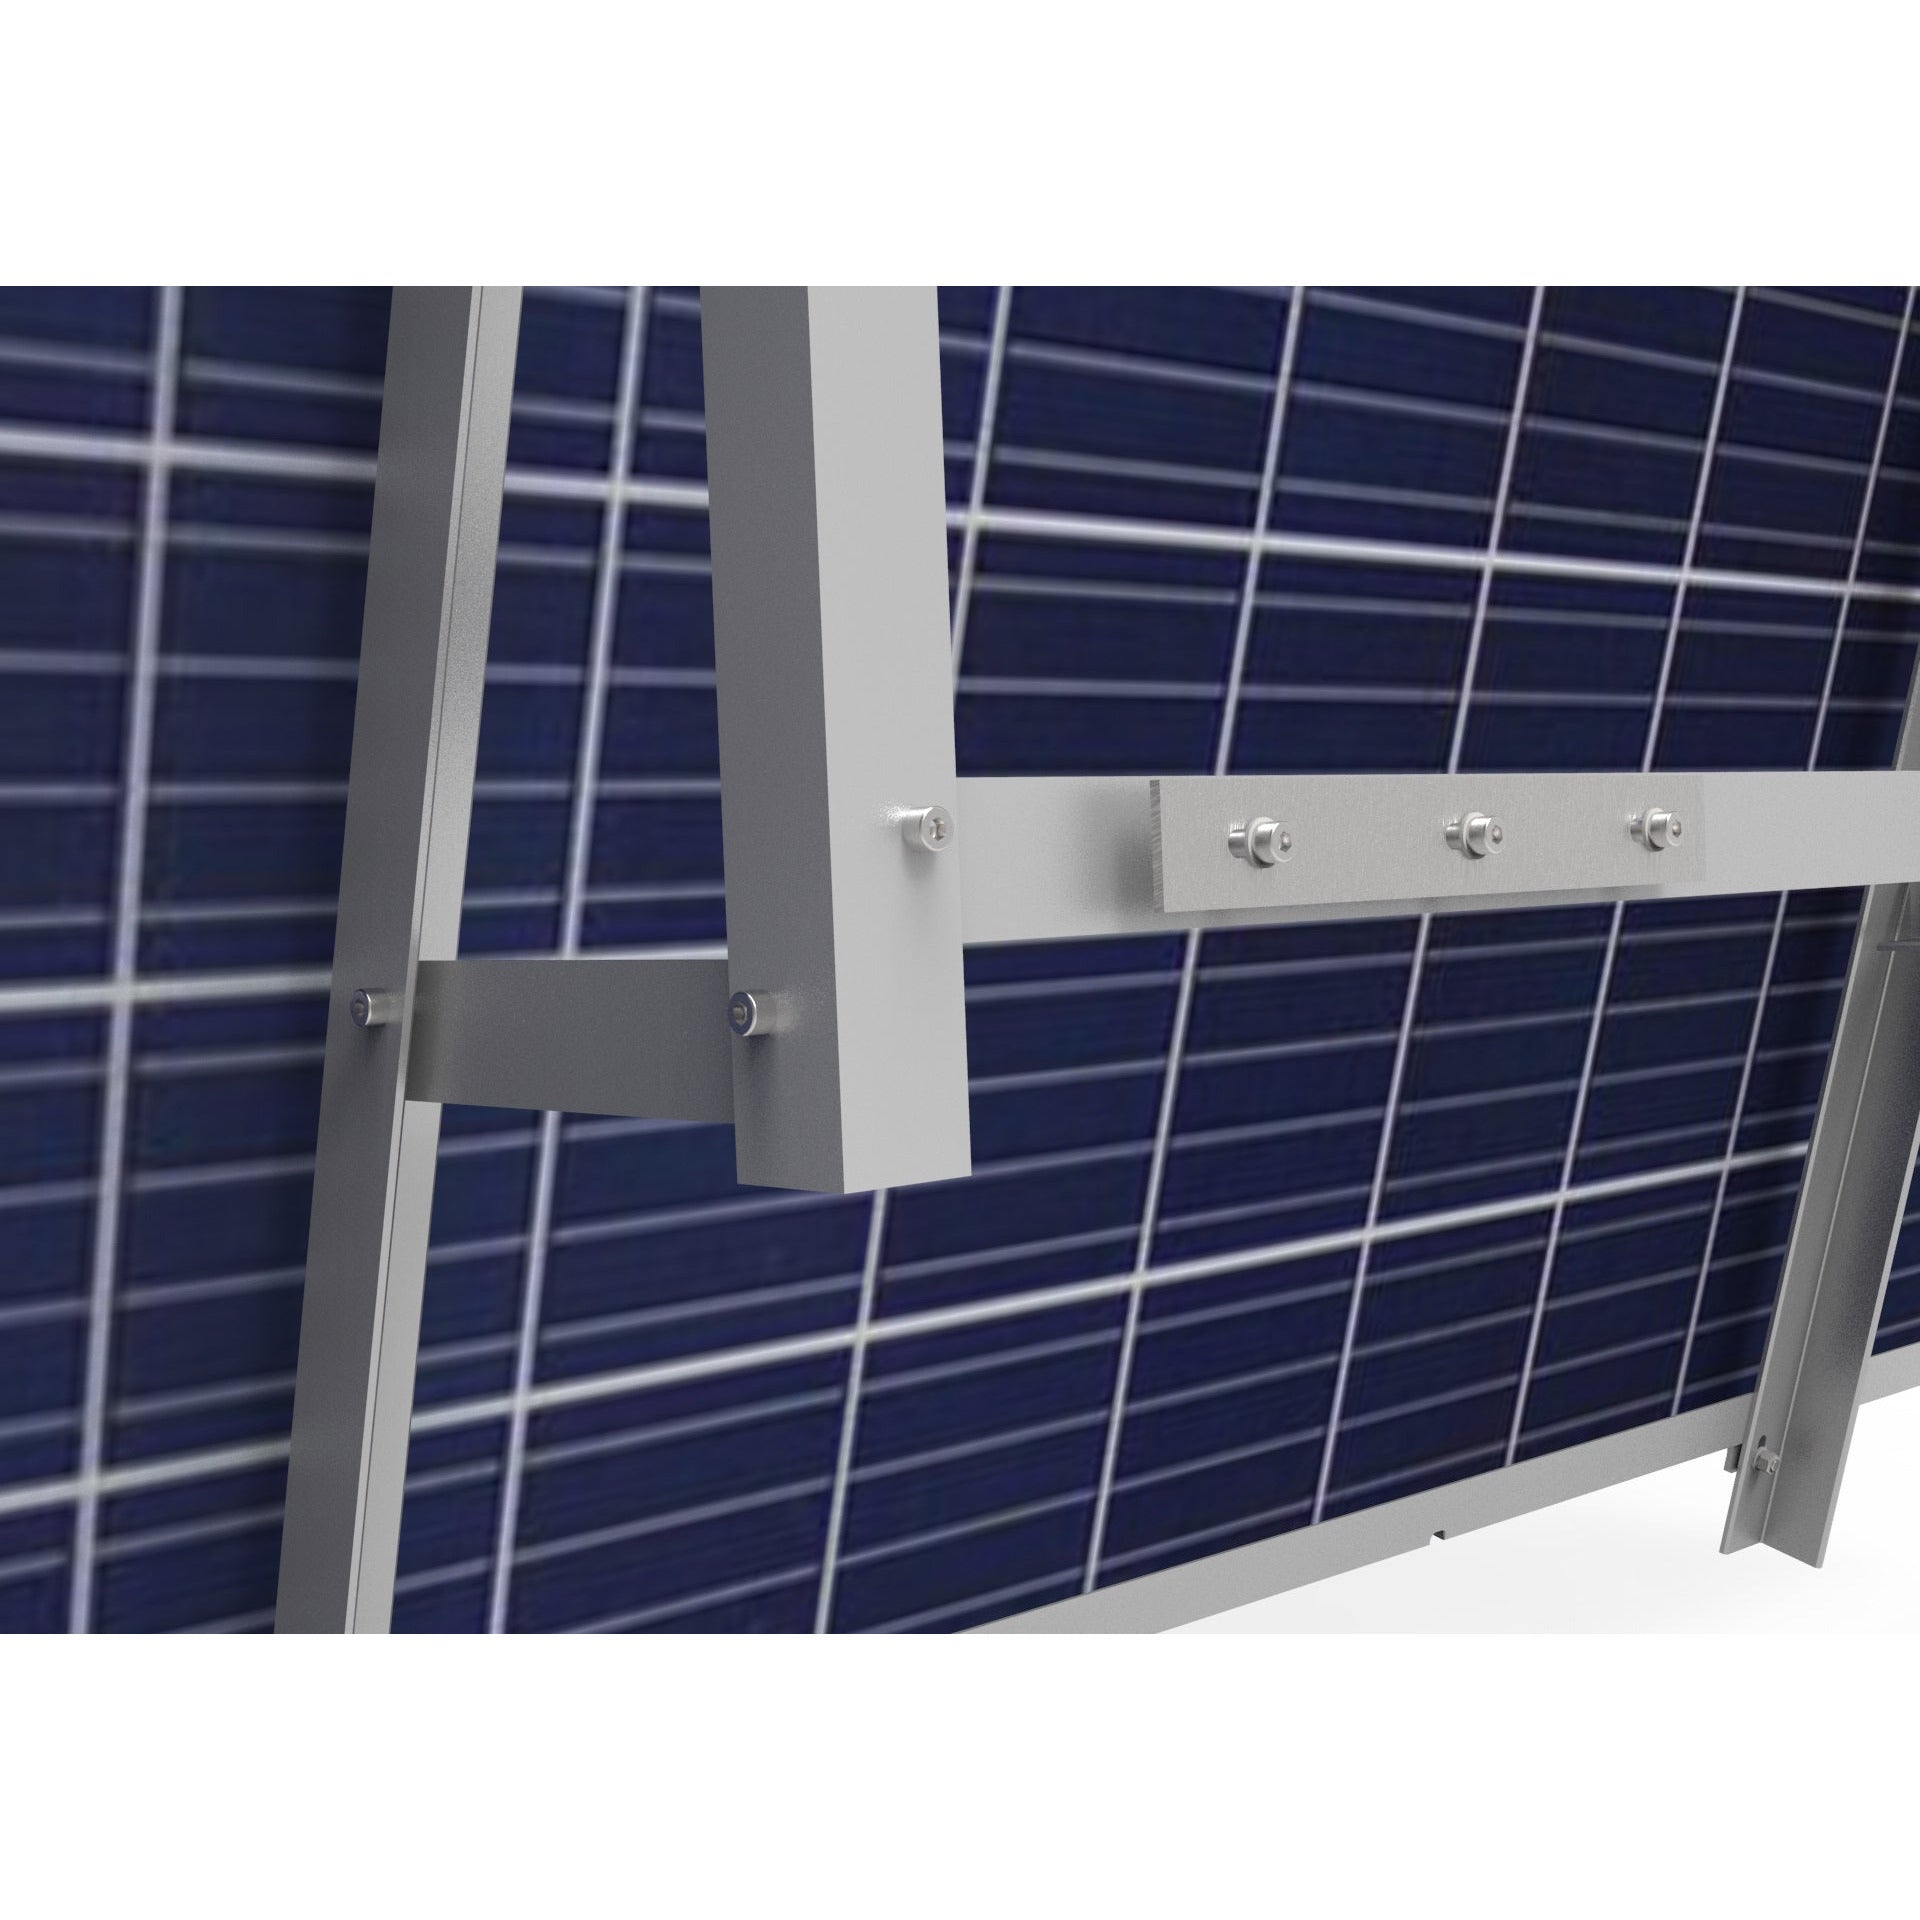 Balkonhalterung für Balkonkraftwerke 1 Solarmodul Alu 15°